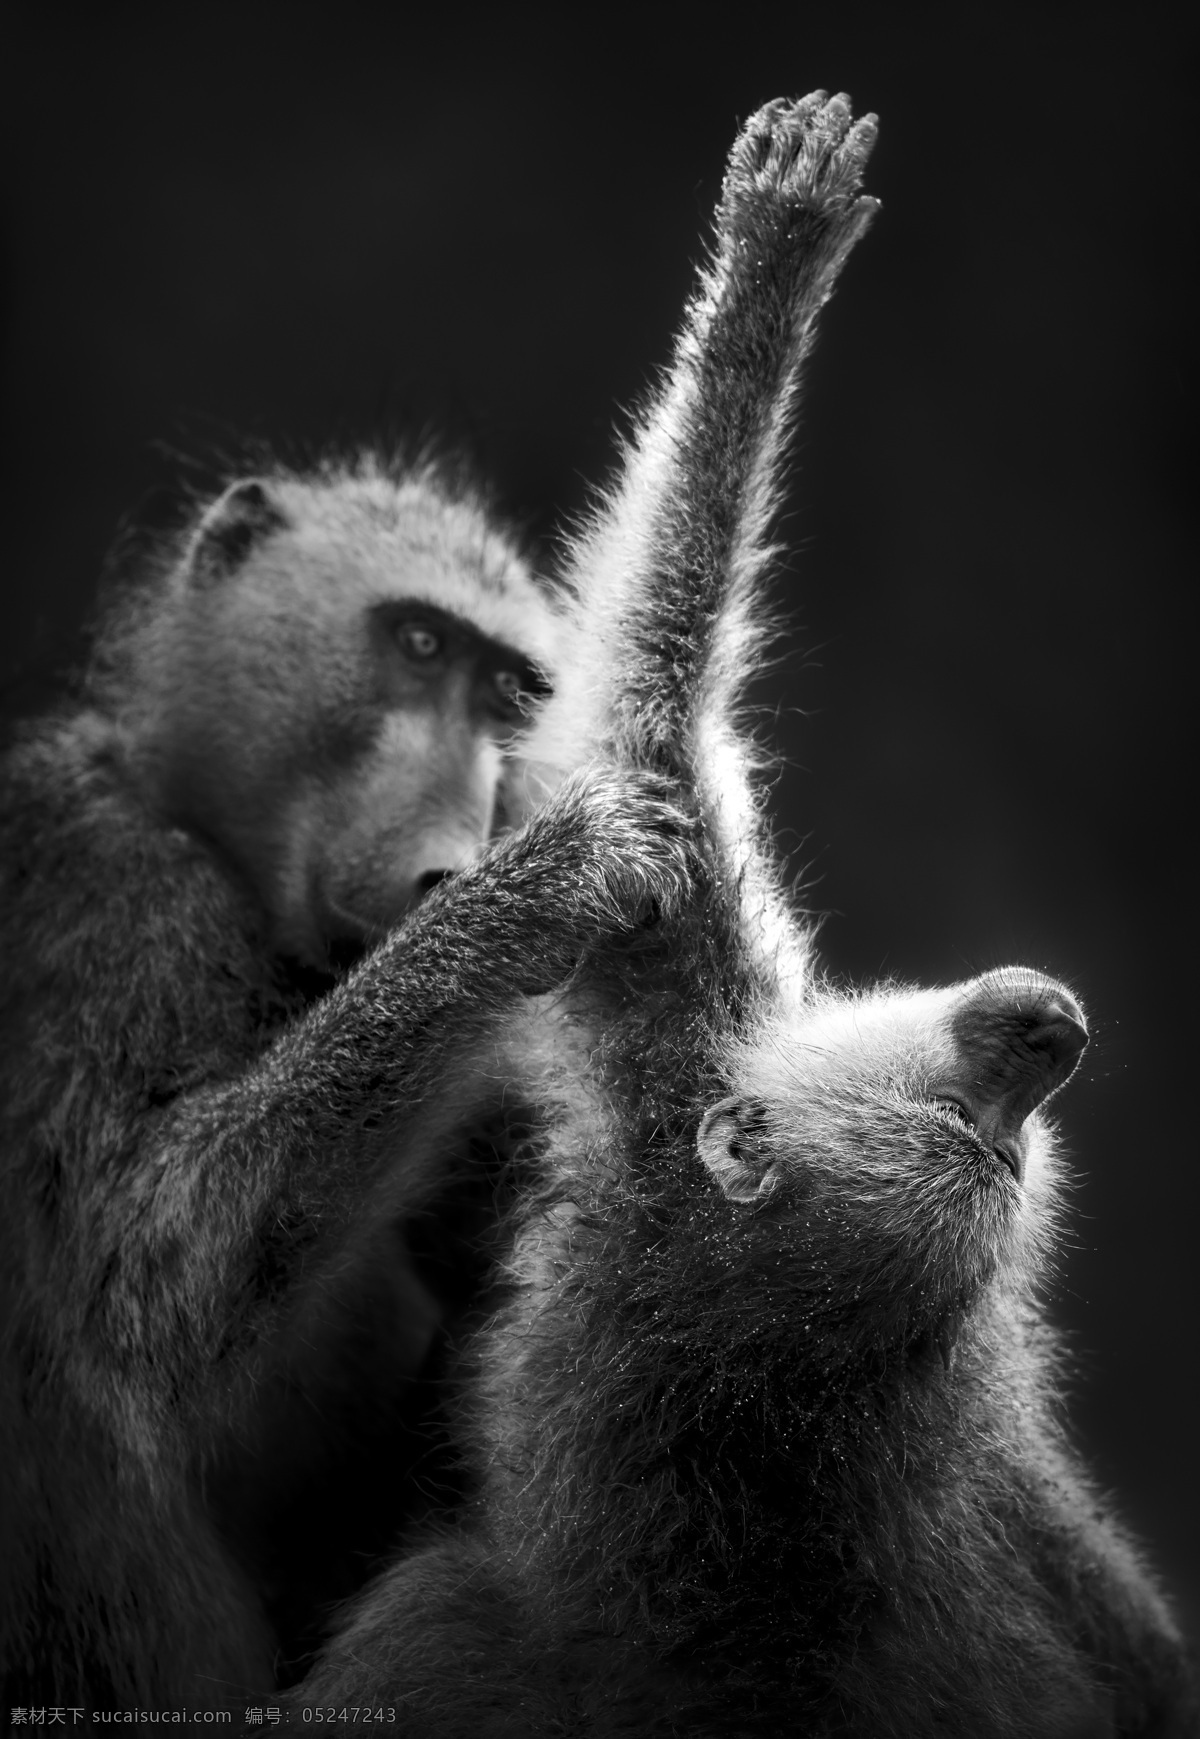 两 只 猩猩 两只猩猩 动物世界 陆地动物 生物世界 非洲草原动物